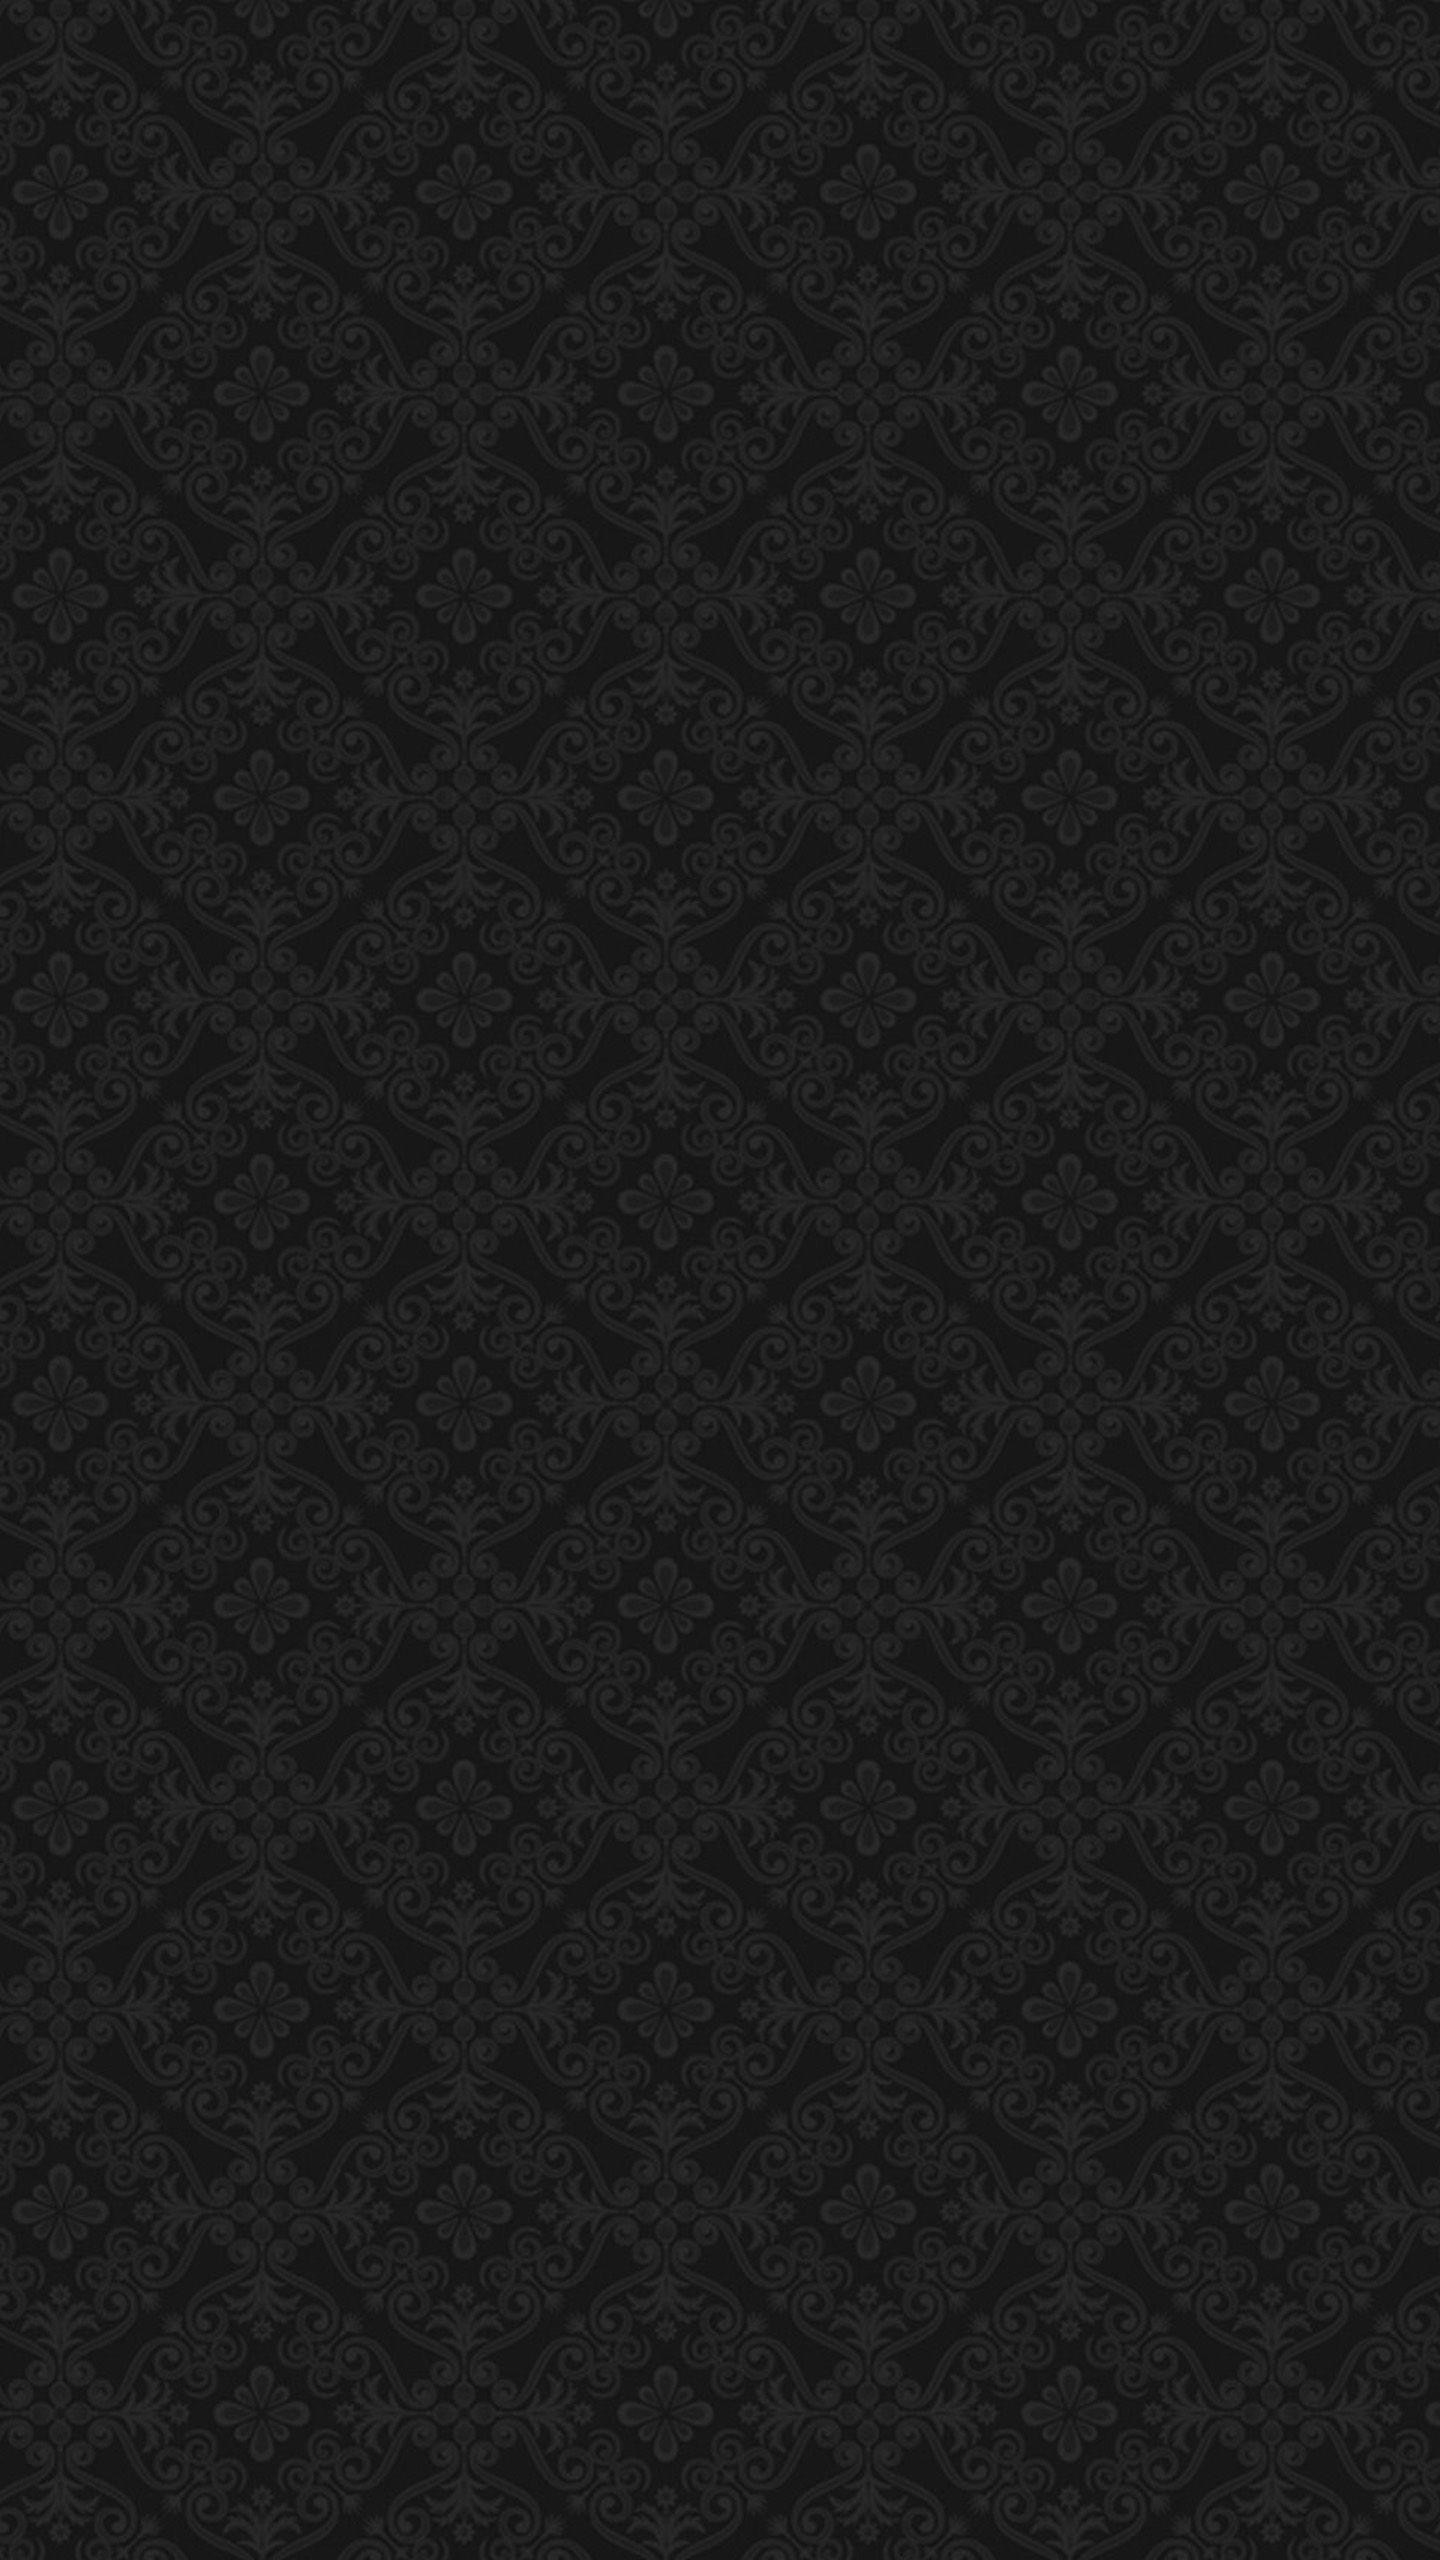 1440x2560 Black baroque Nexus 6 Wallpapers, Nexus 6 wallpapers and Backgrounds